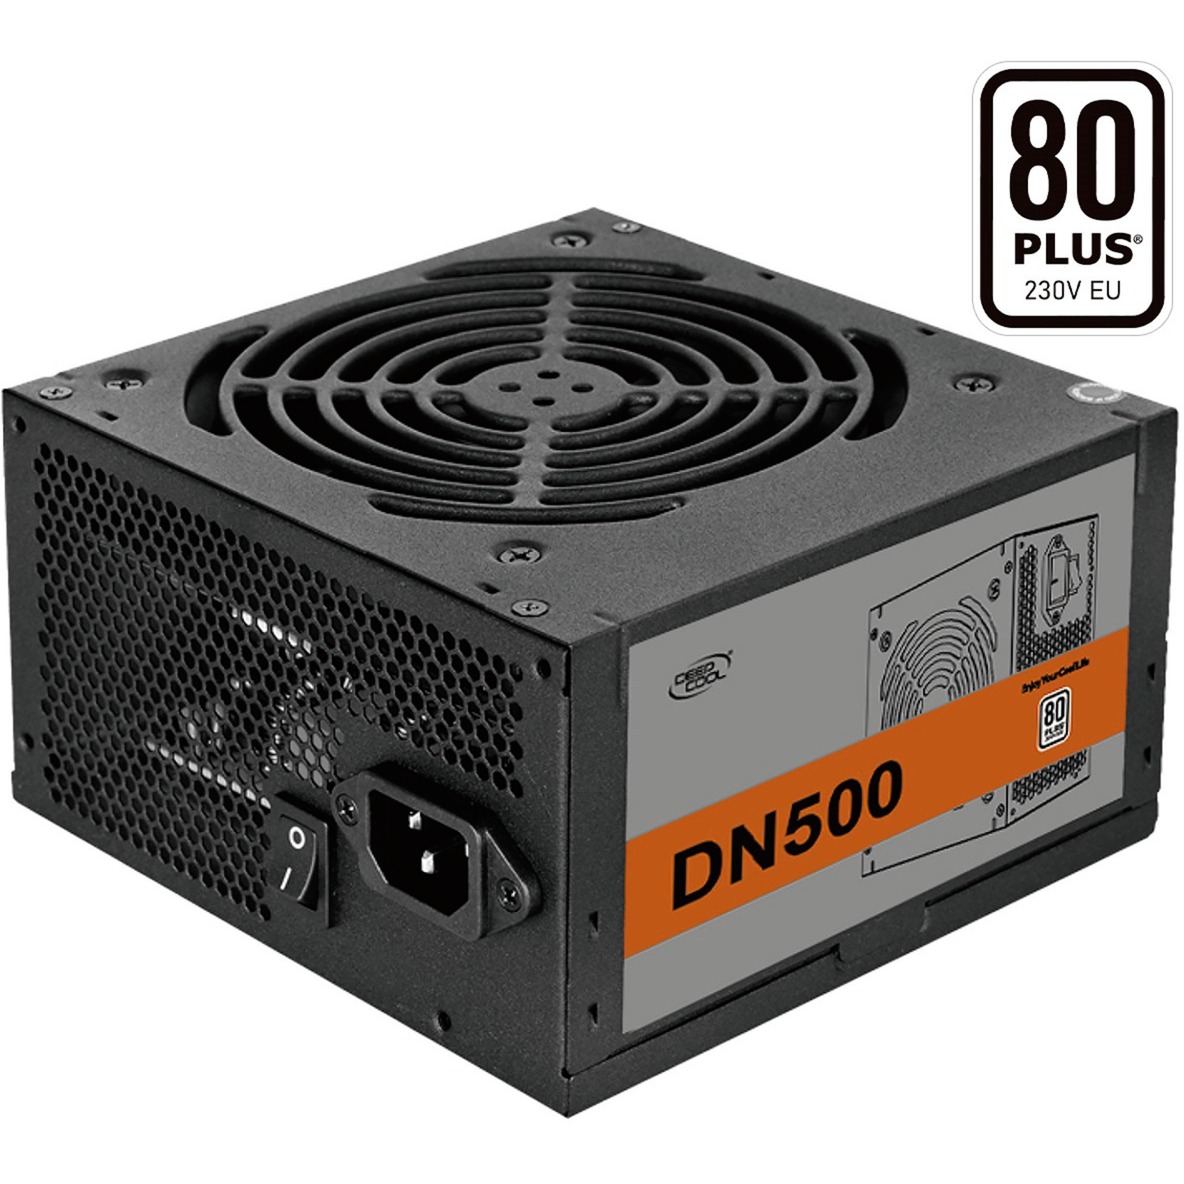 Image of Alternate - DN500 500W, PC-Netzteil online einkaufen bei Alternate